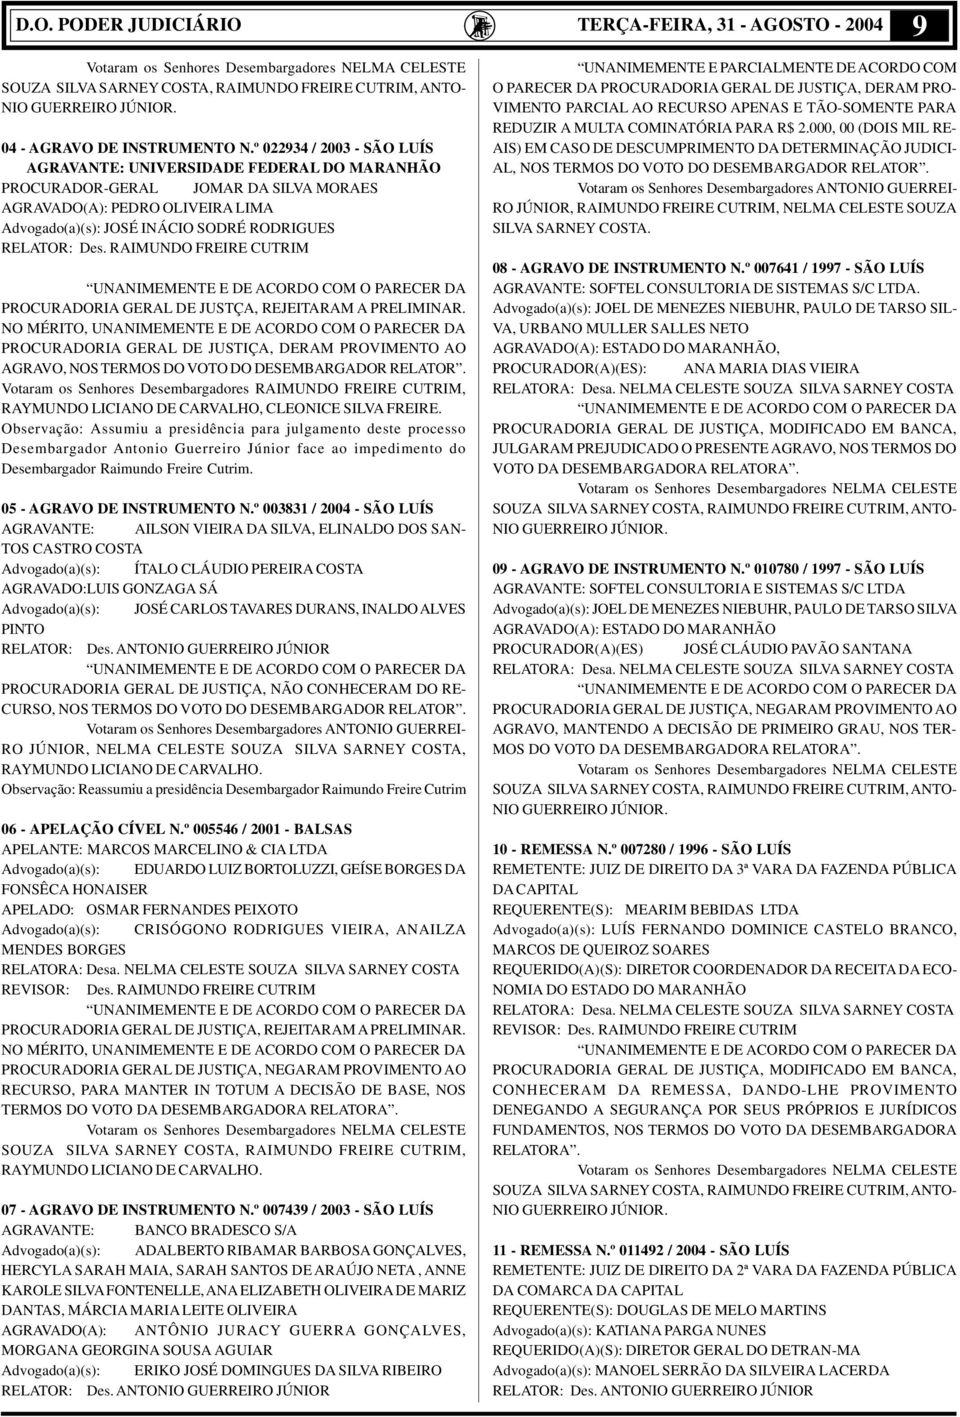 º 022934 / 2003 - SÃO LUÍS AGRAVANTE: UNIVERSIDADE FEDERAL DO MARANHÃO PROCURADOR-GERAL JOMAR DA SILVA MORAES AGRAVADO(A): PEDRO OLIVEIRA LIMA Advogado(a)(s): JOSÉ INÁCIO SODRÉ RODRIGUES RELATOR: Des.